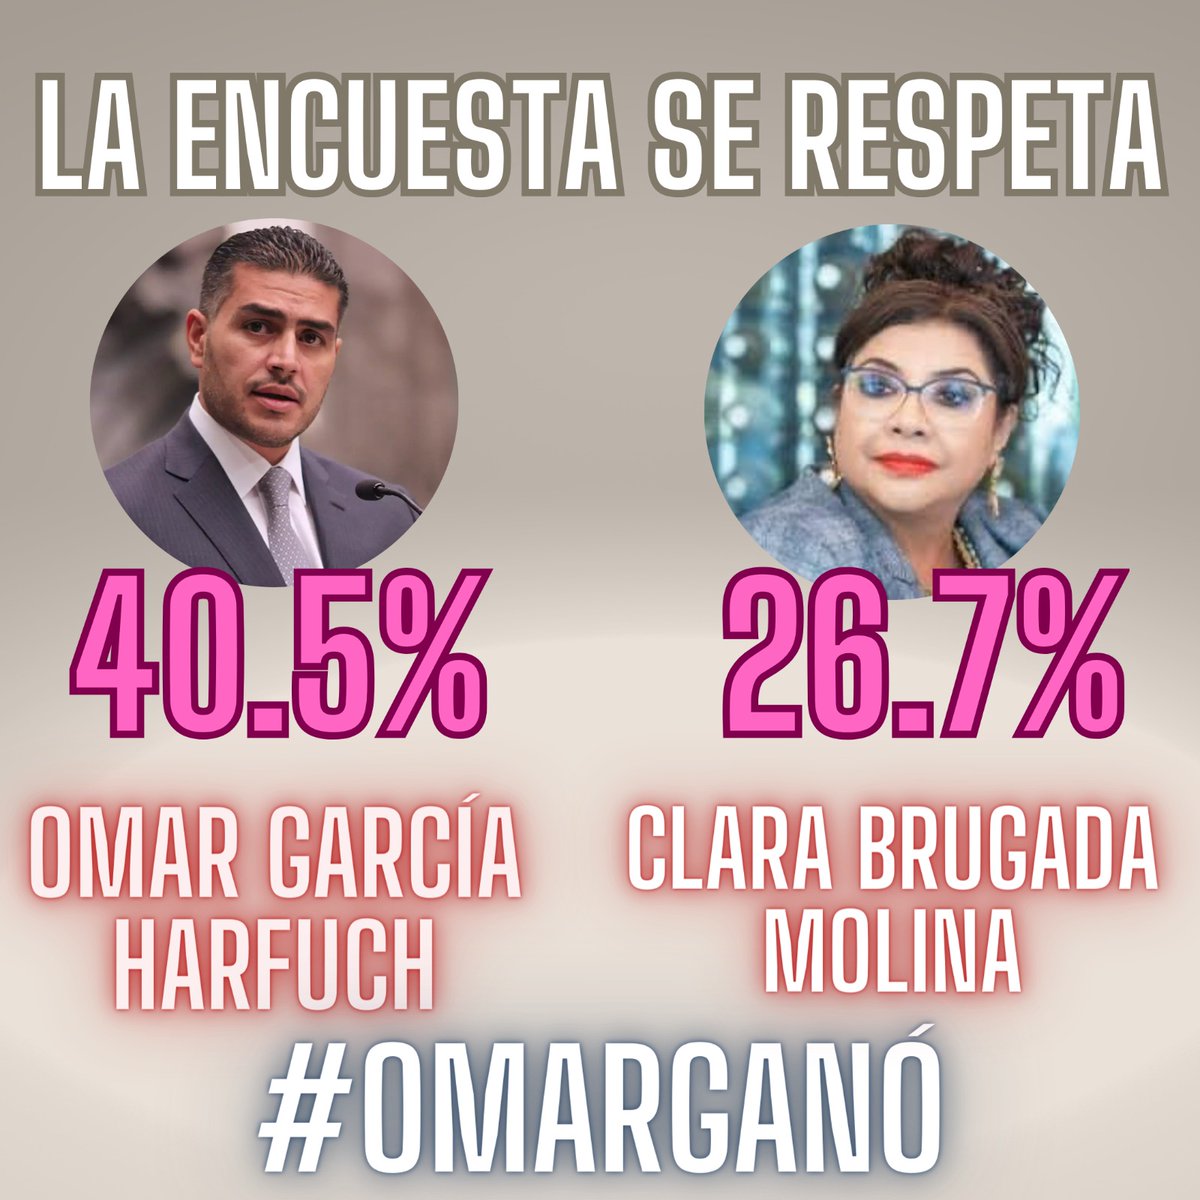 En la ciudad @OHarfuch ganó la encuesta y #Laencuestaserespeta #14puntos diferencia